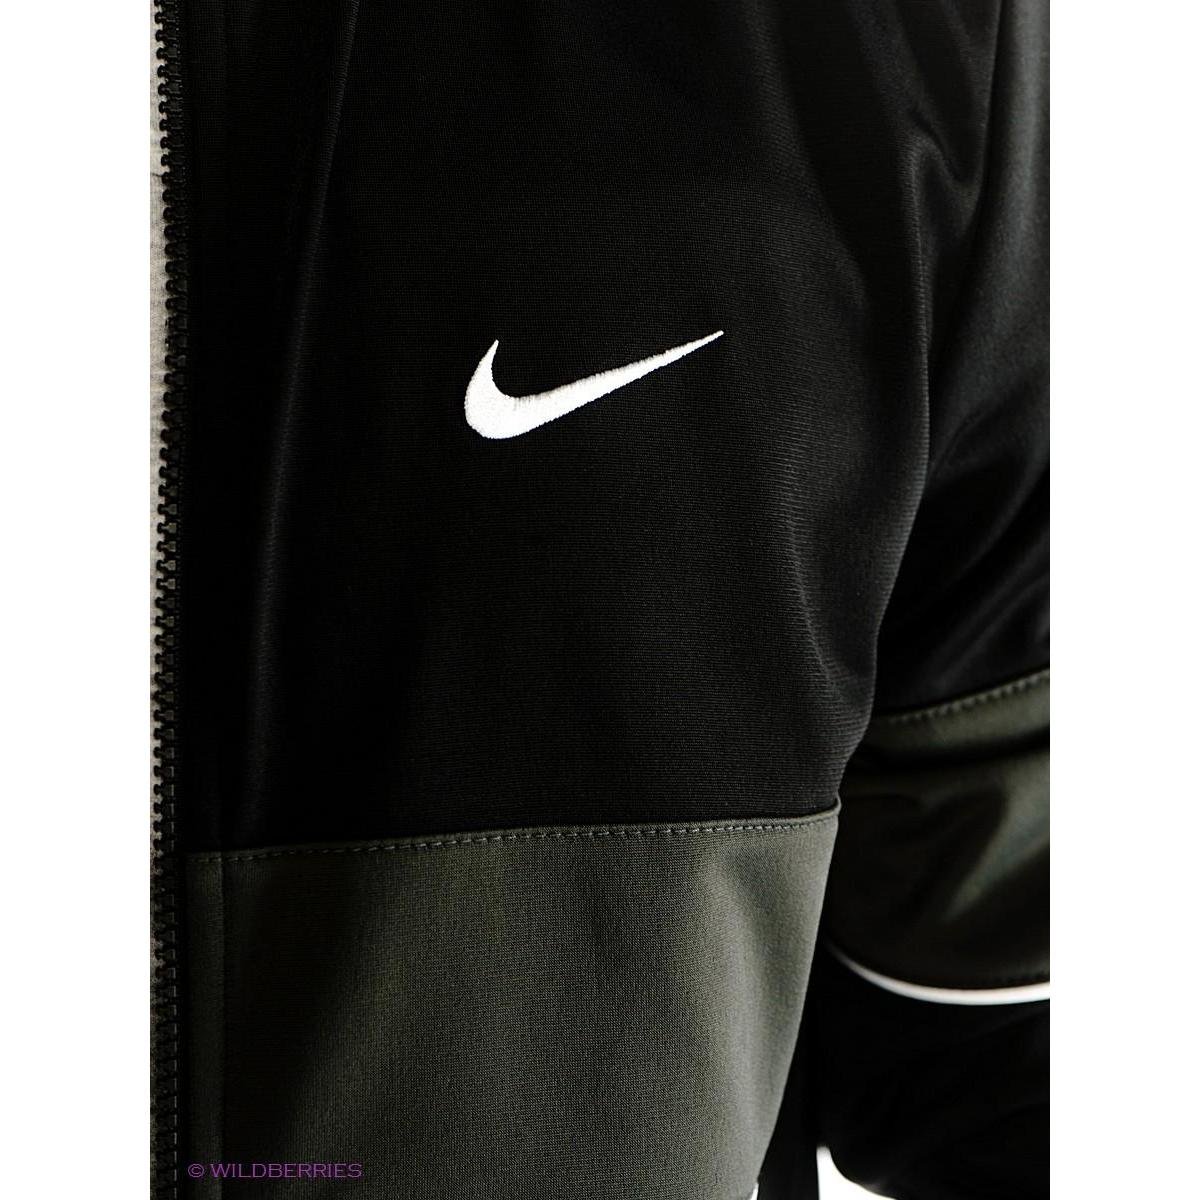 Nike Brooklyn спортивный костюм